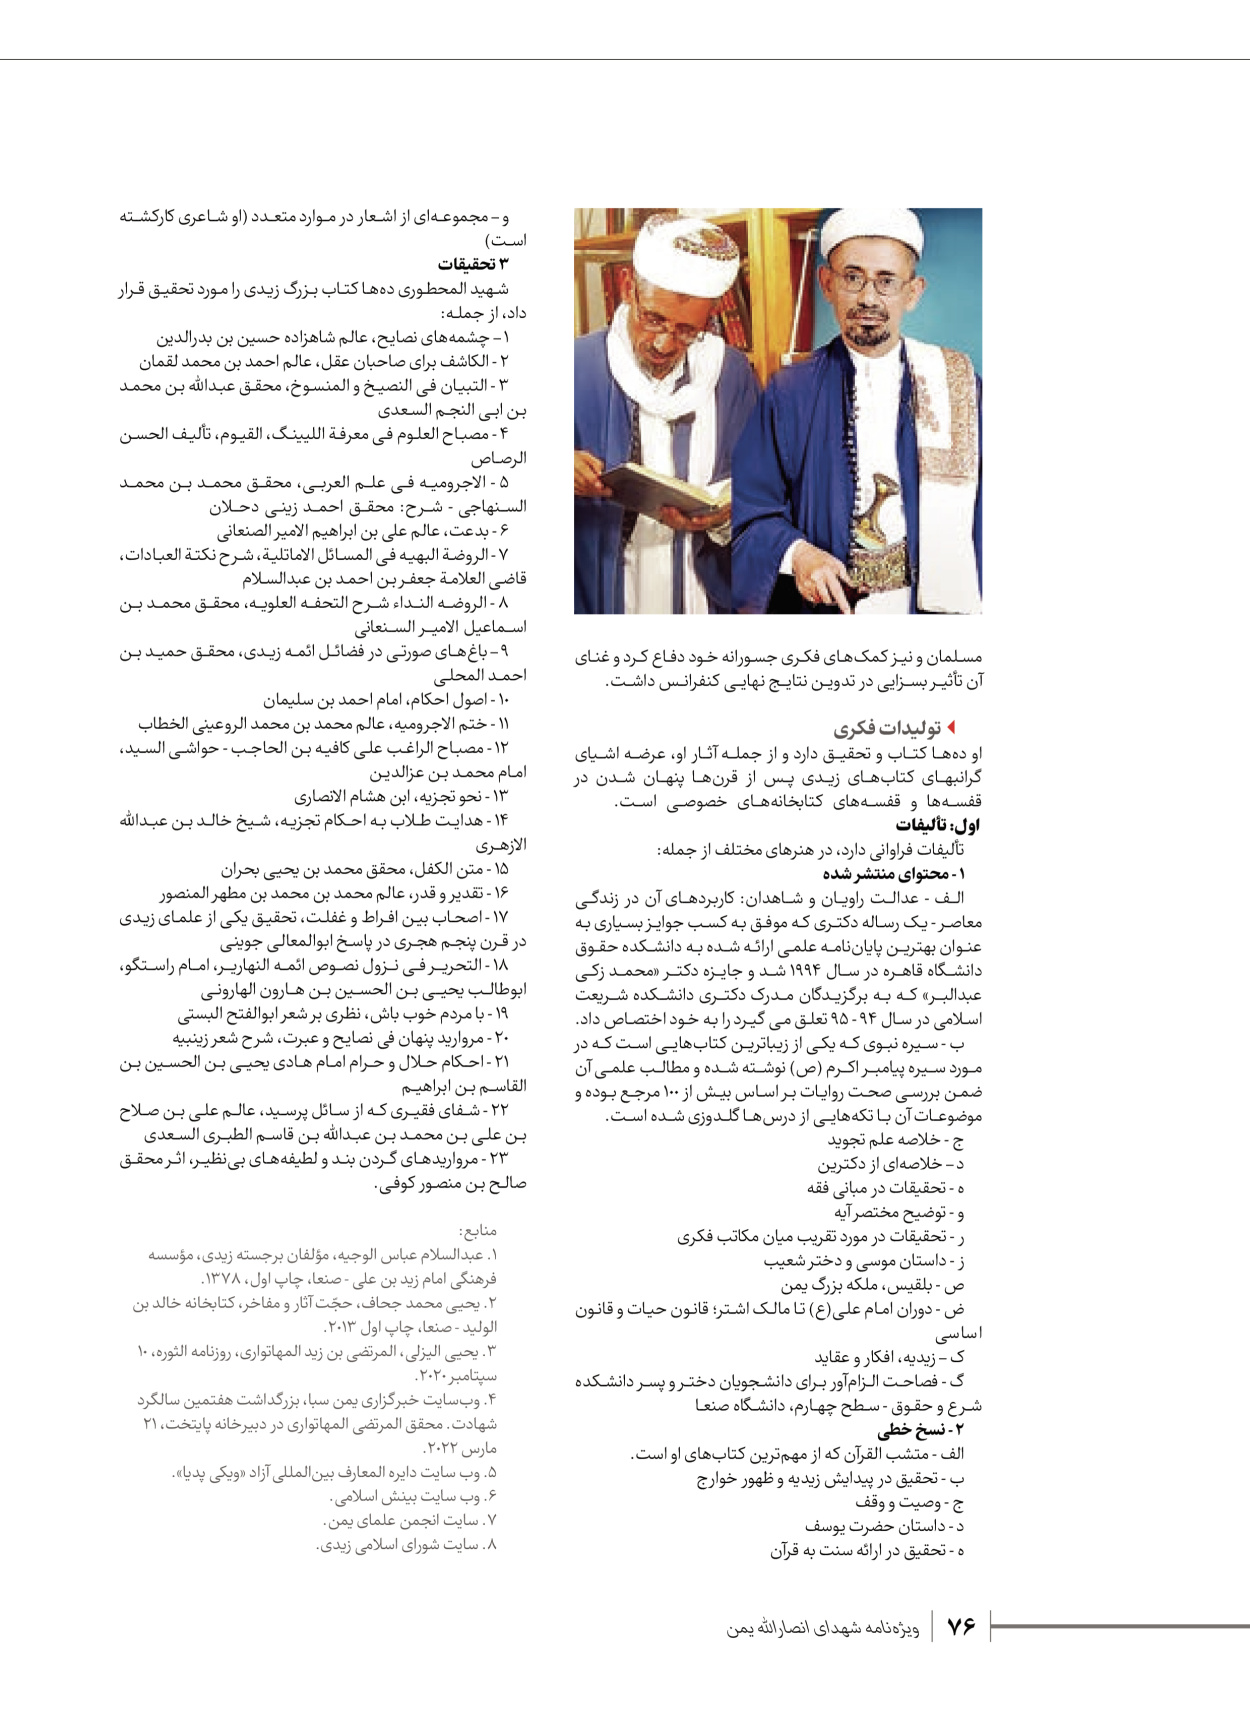 روزنامه ایران - ویژه نامه شهدای قدس ۴ - ۰۱ اسفند ۱۴۰۲ - صفحه ۷۶